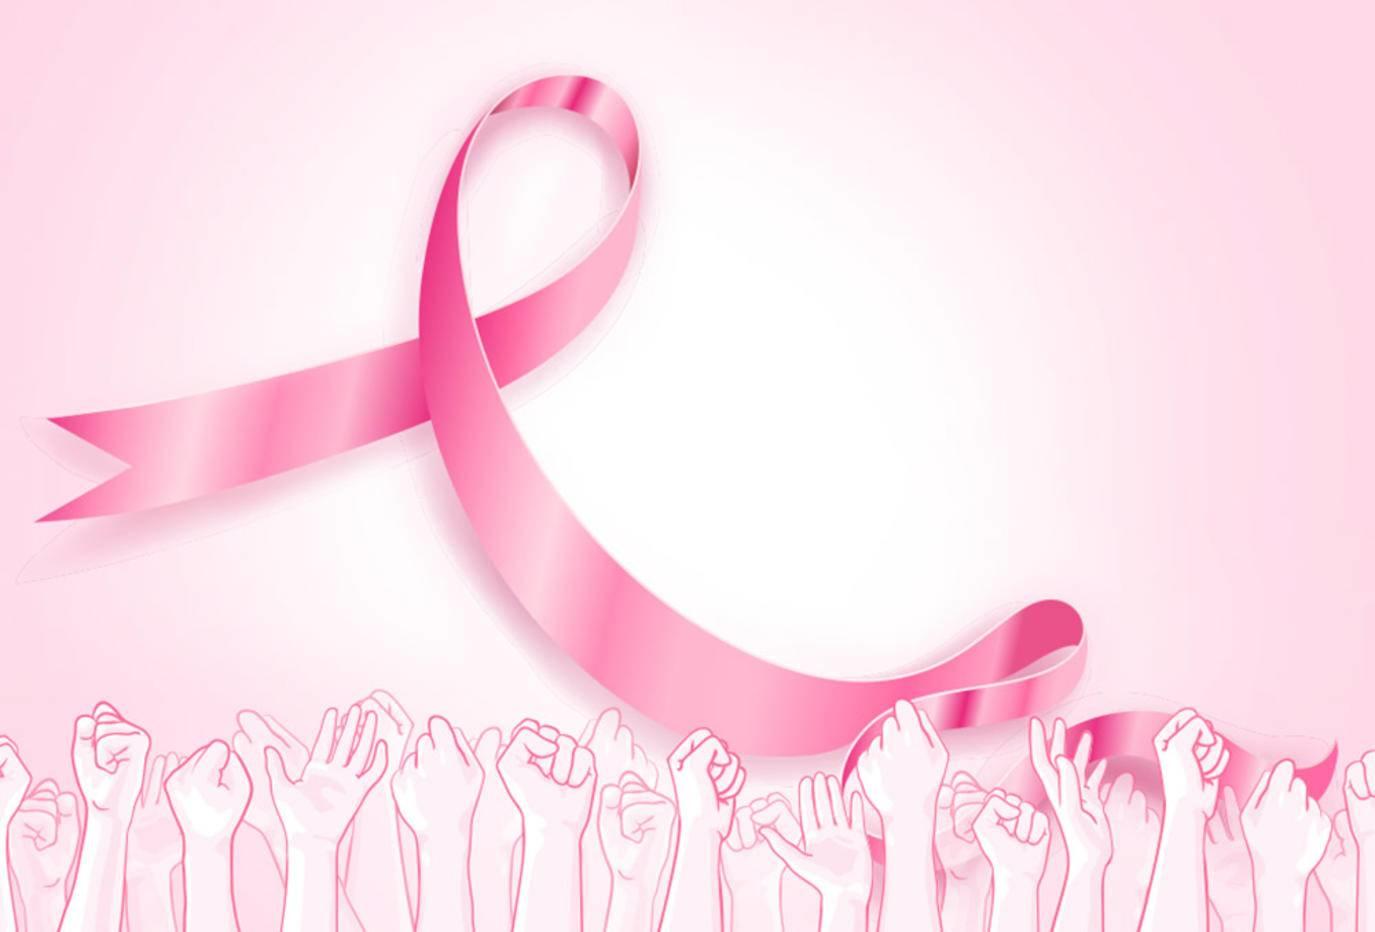 سرطان الثدي في العراق.. موظفات يُفاجئن بالمرض ومصابات شُفينَ بـ"الاستقرار النفسي"